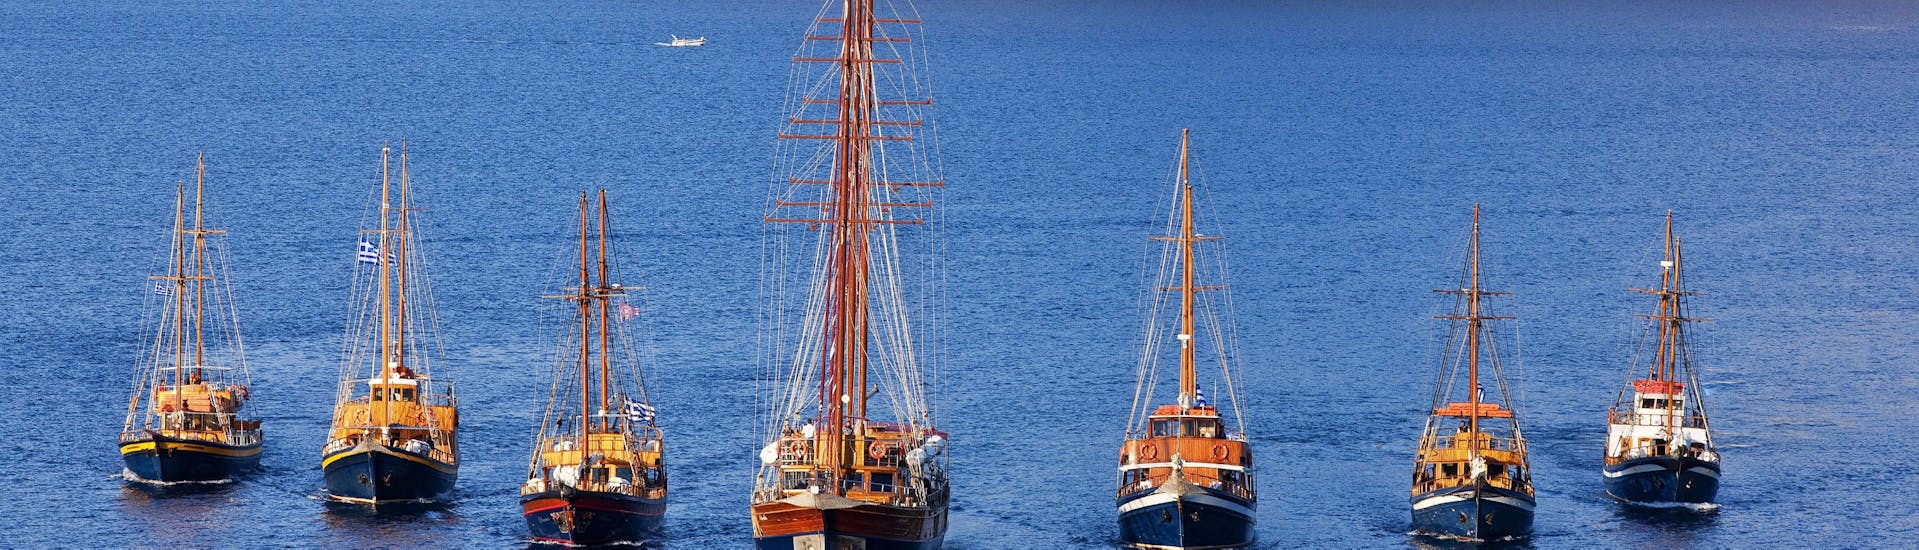 Blick auf die Boote von Caldera's Boats auf dem Meer von Santorini.